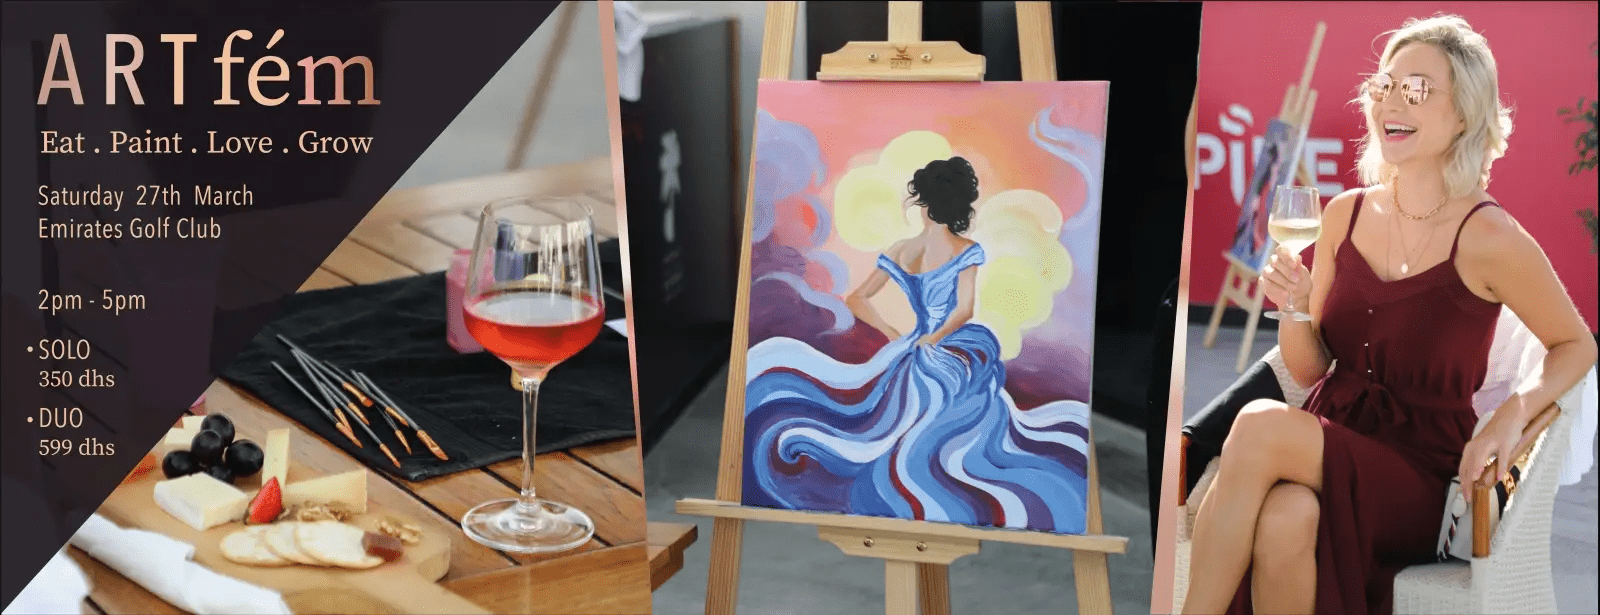 ART fem painting experience - Coming Soon in UAE